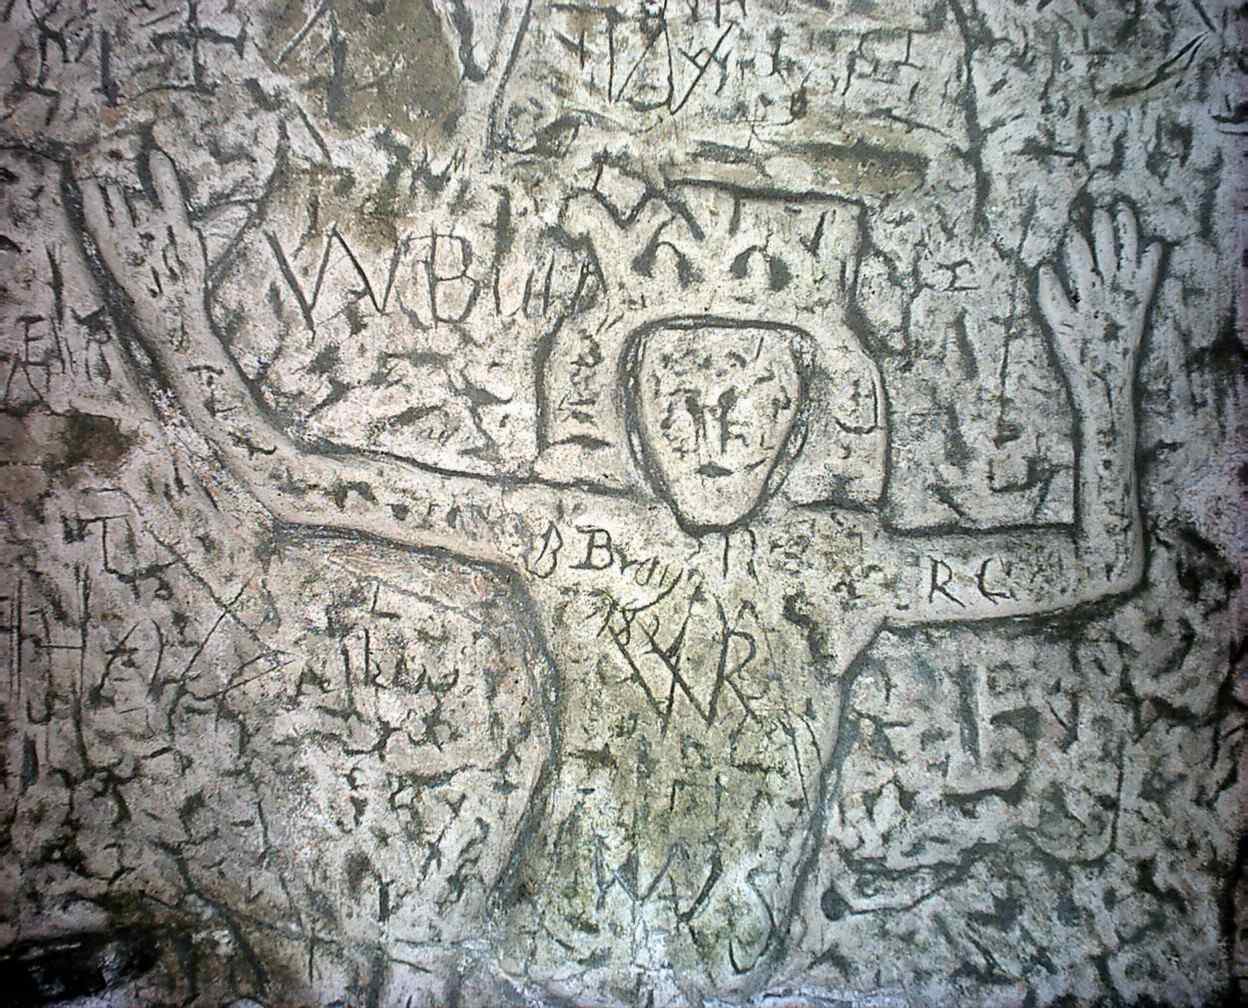 İnsan yapımı Royston Mağarası 1'deki gizemli semboller ve oymalar